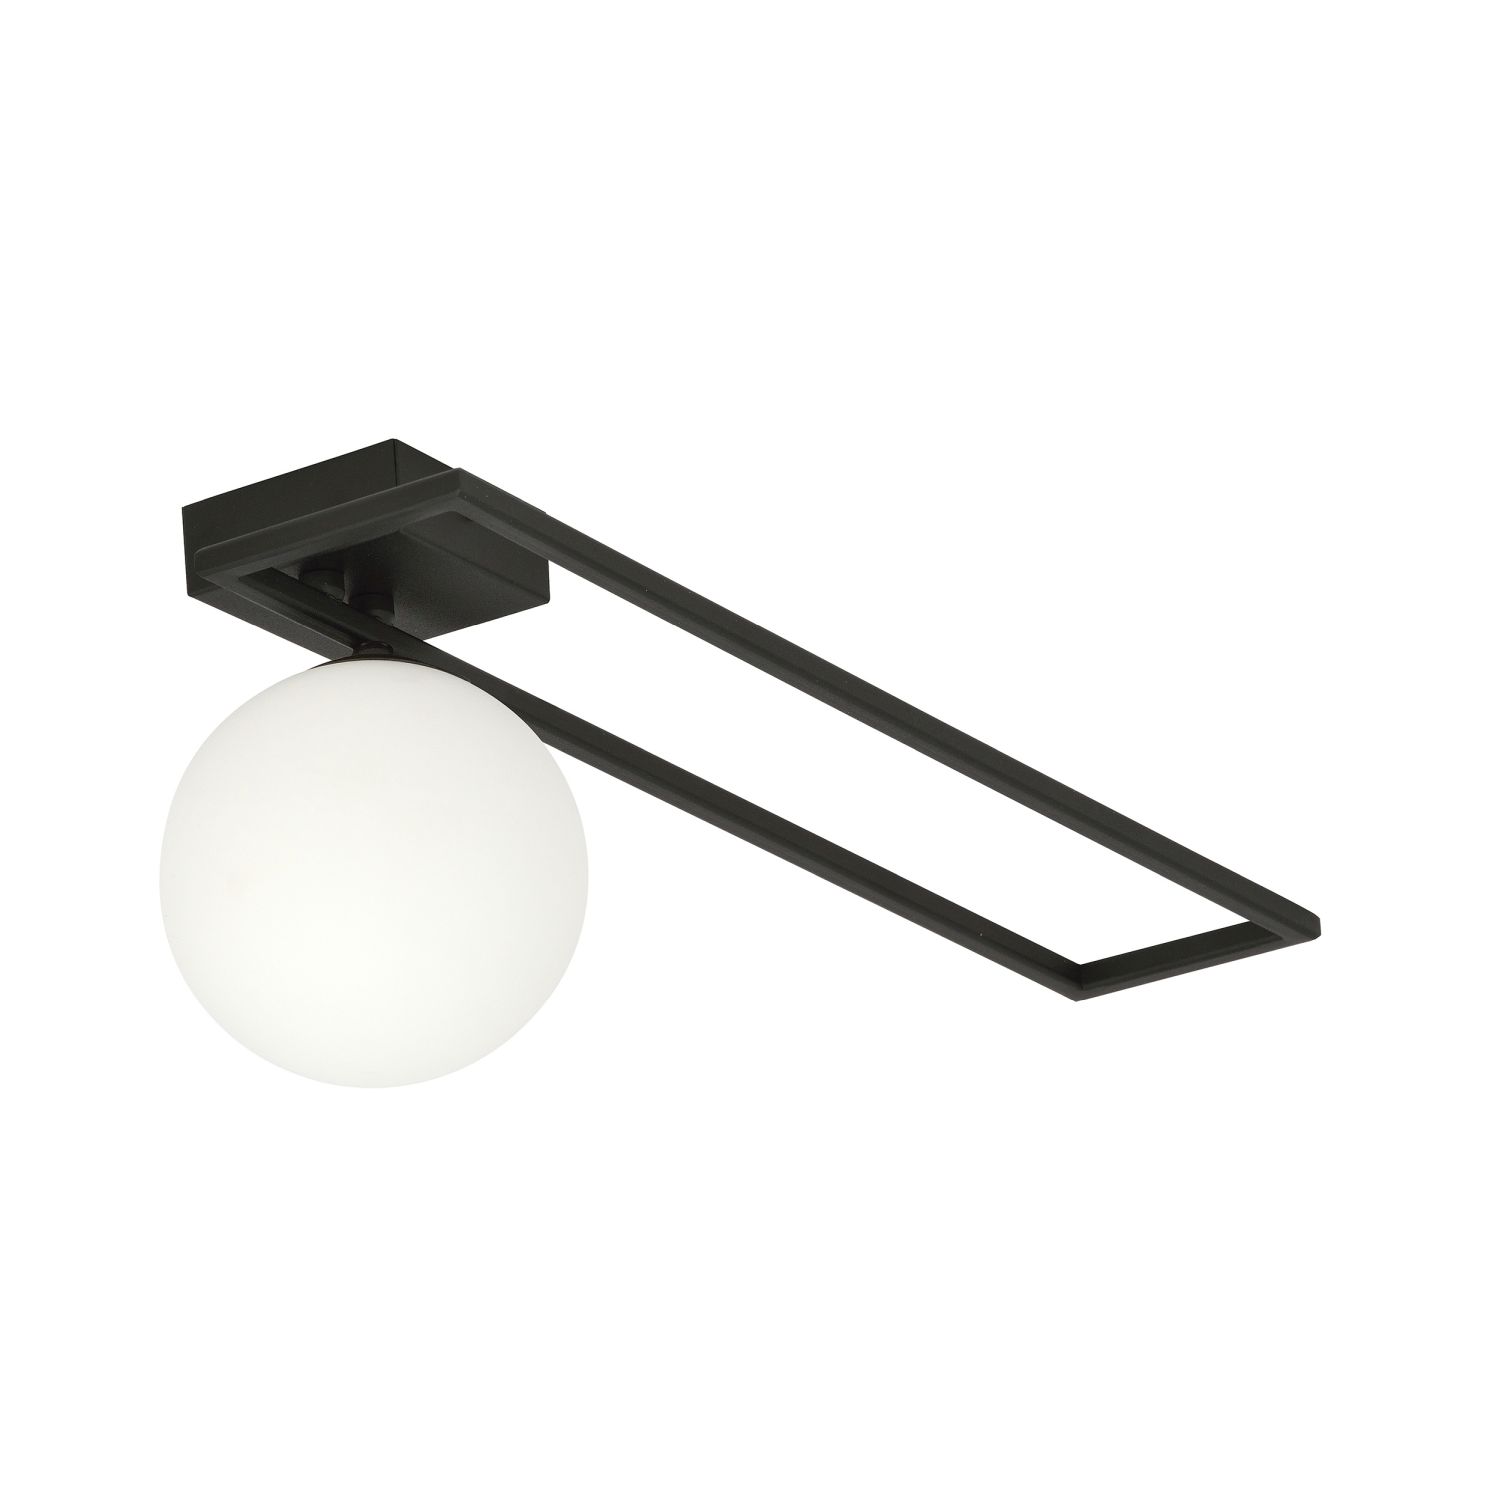 Deckenlampe Schwarz Weiß E14 50 cm Kugelschirm Glas Metall